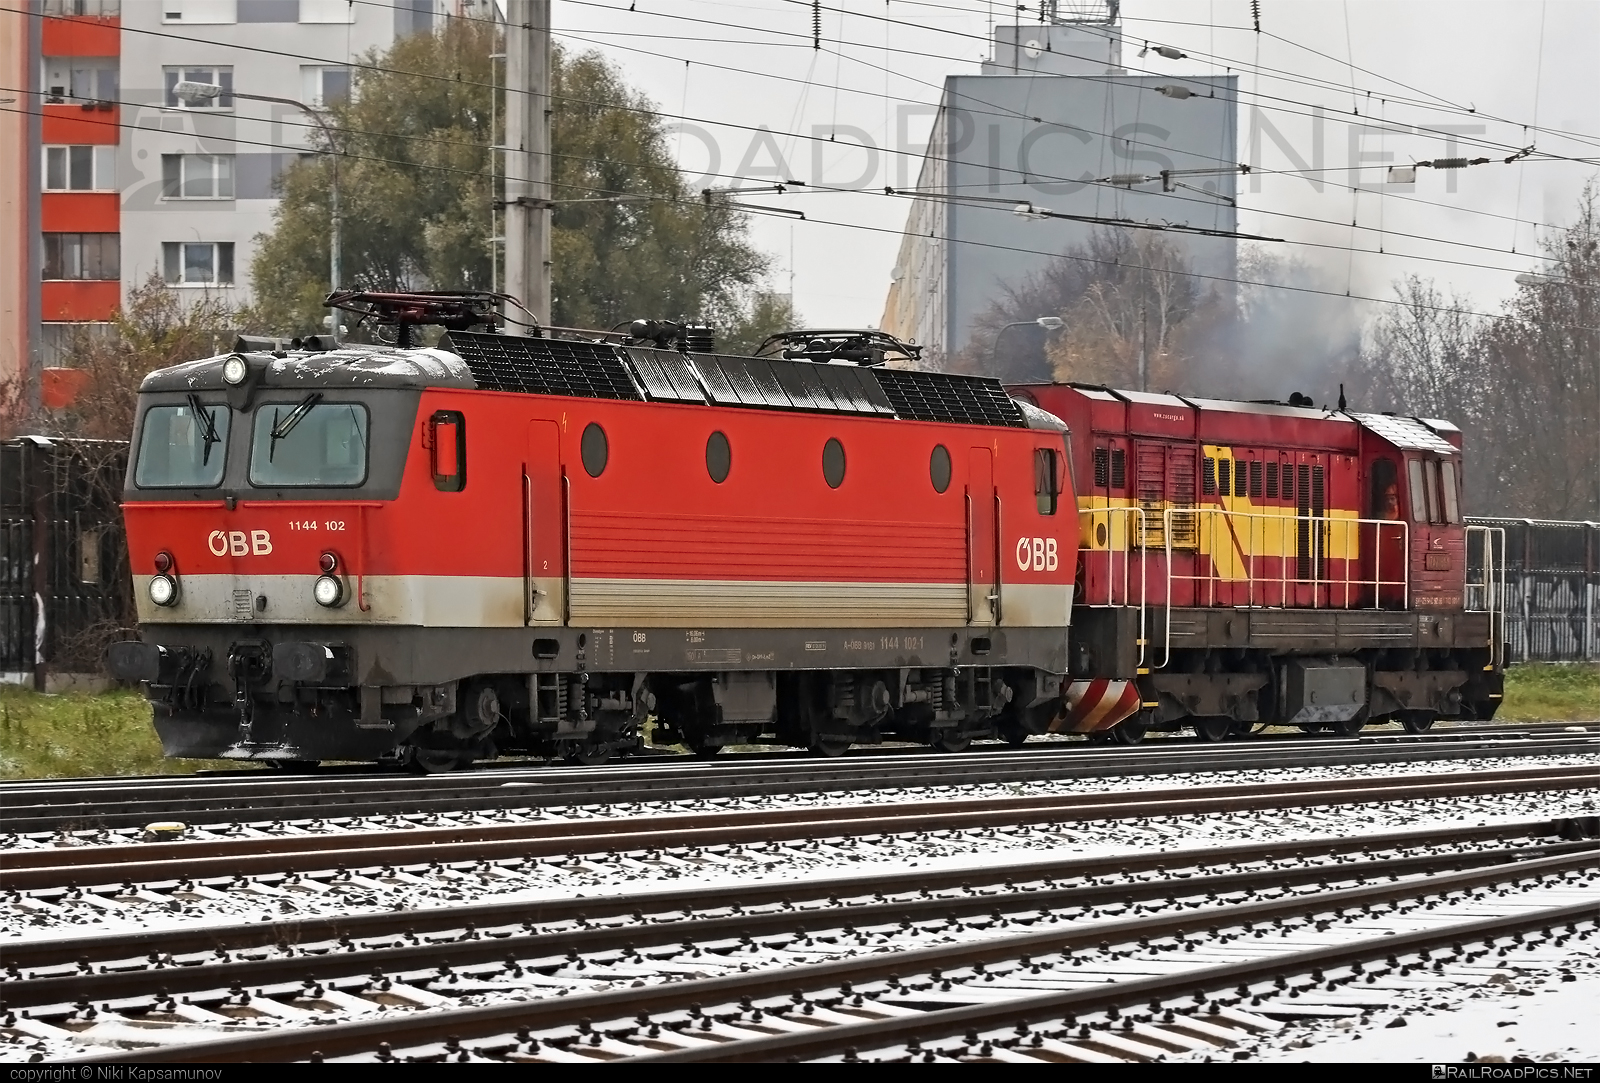 SGP ÖBB Class 1144 - 1144 102 operated by Rail Cargo Austria AG #obb #obbclass1144 #osterreichischebundesbahnen #rcw #sgp #sgp1144 #simmeringgrazpauker